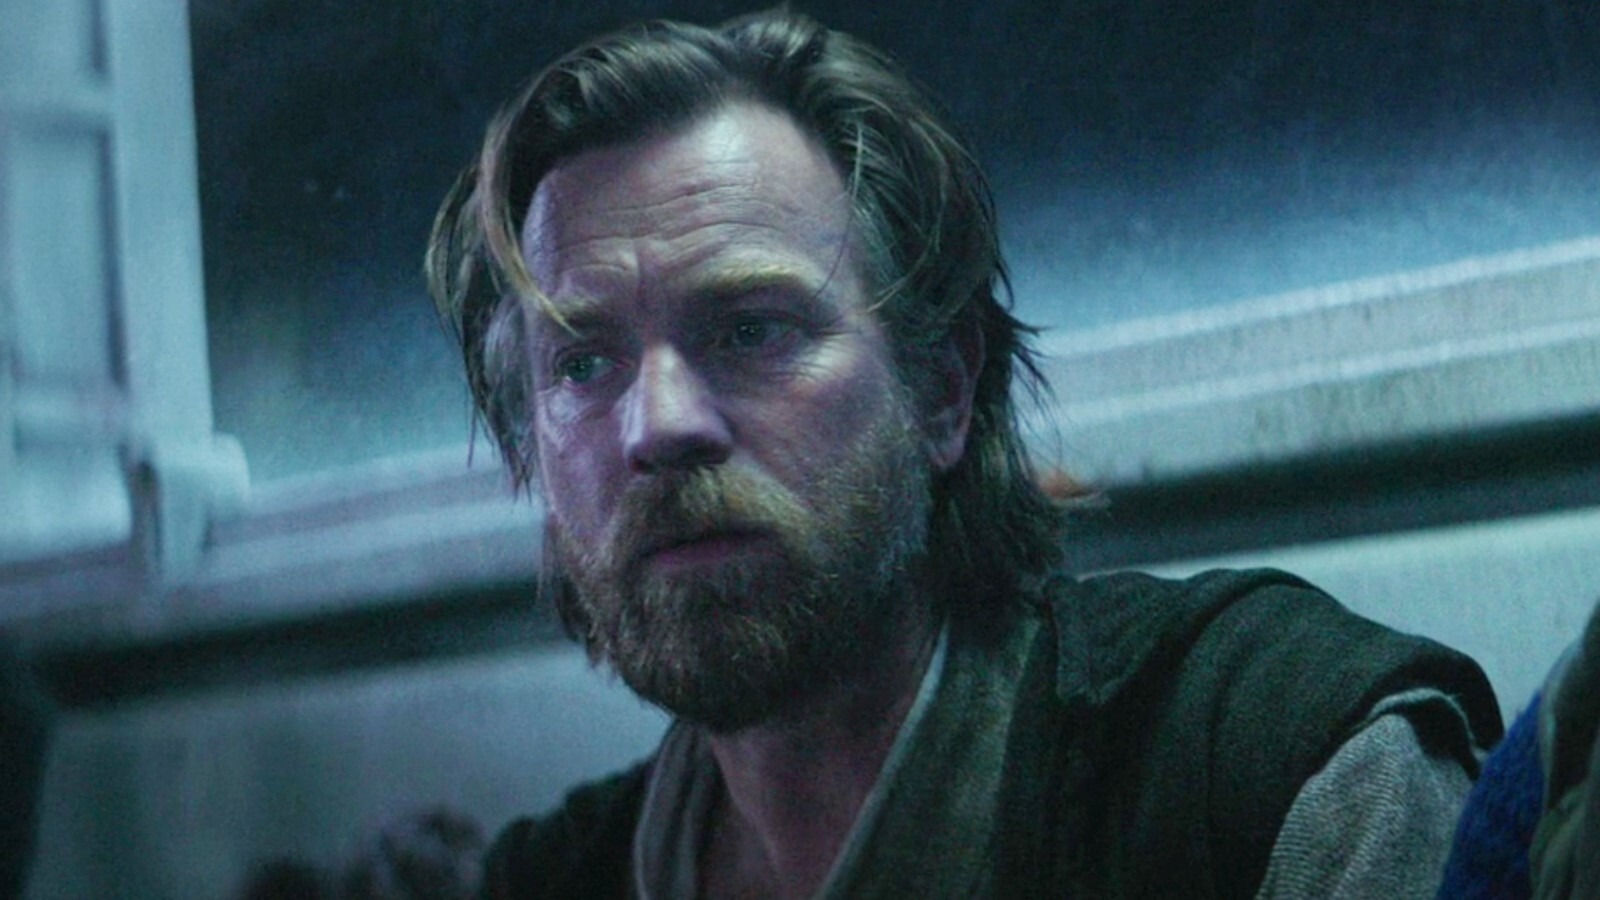 #The Lesson Obi-Wan Kenobi Borrows From Star Wars: The Last Jedi